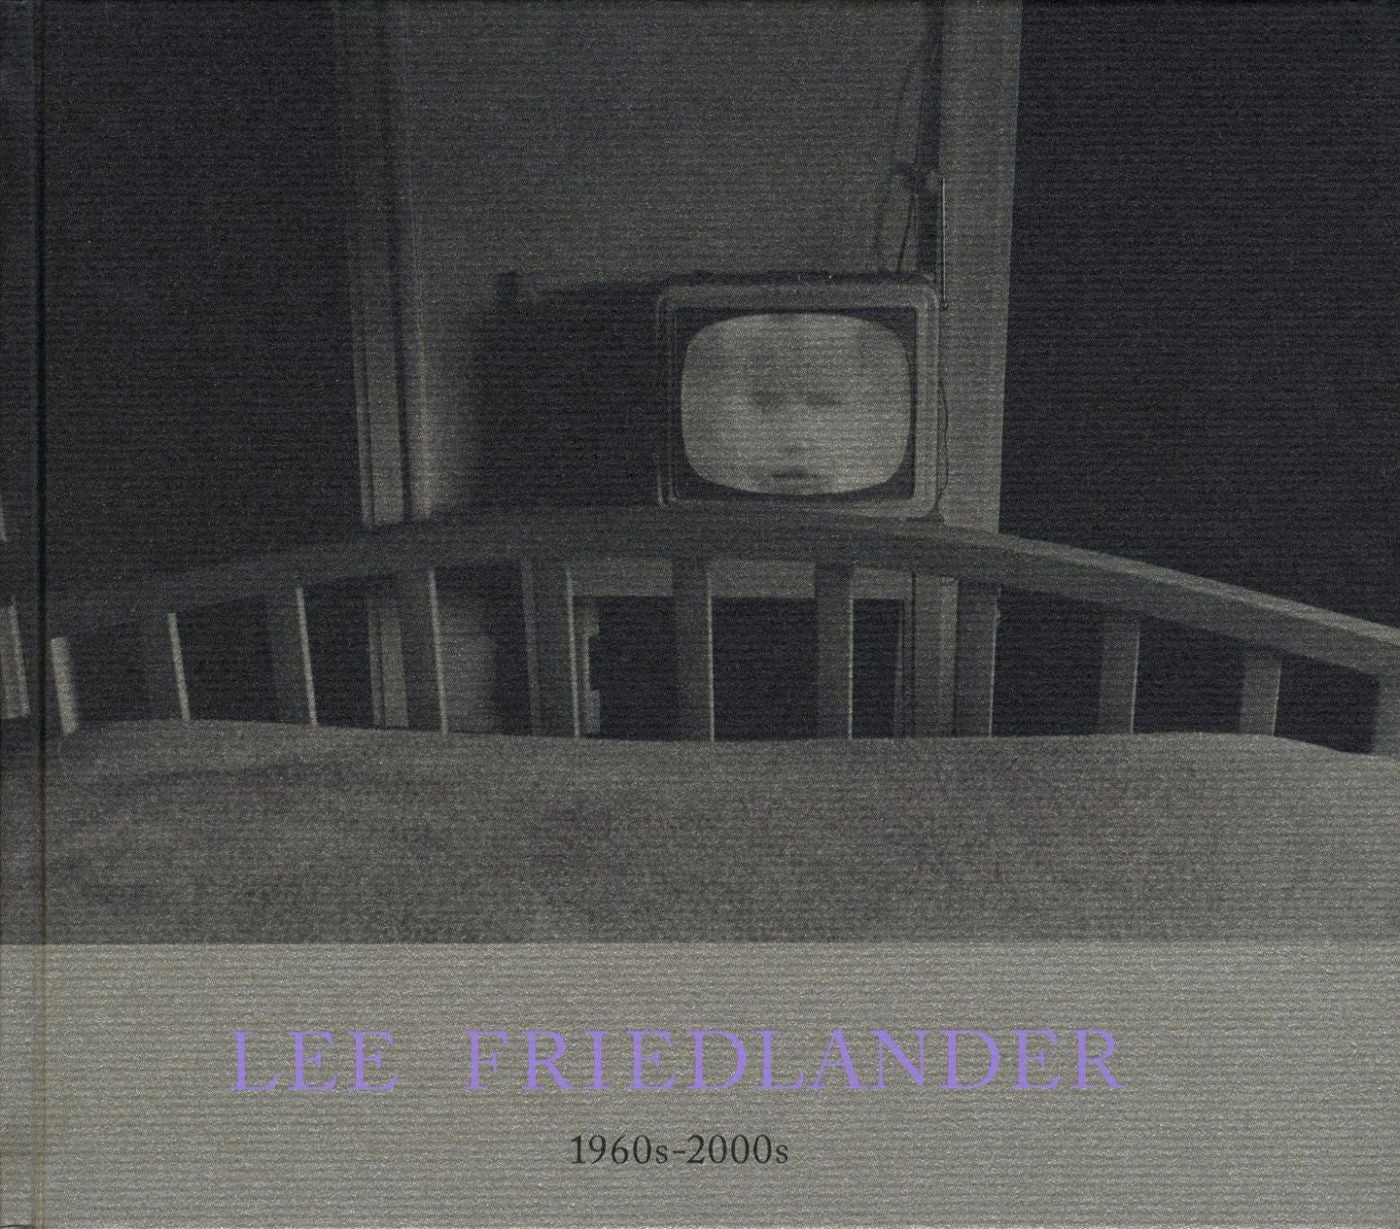 Lee Friedlander: 1960s - 2000s (Rat Hole Gallery) [SIGNED]